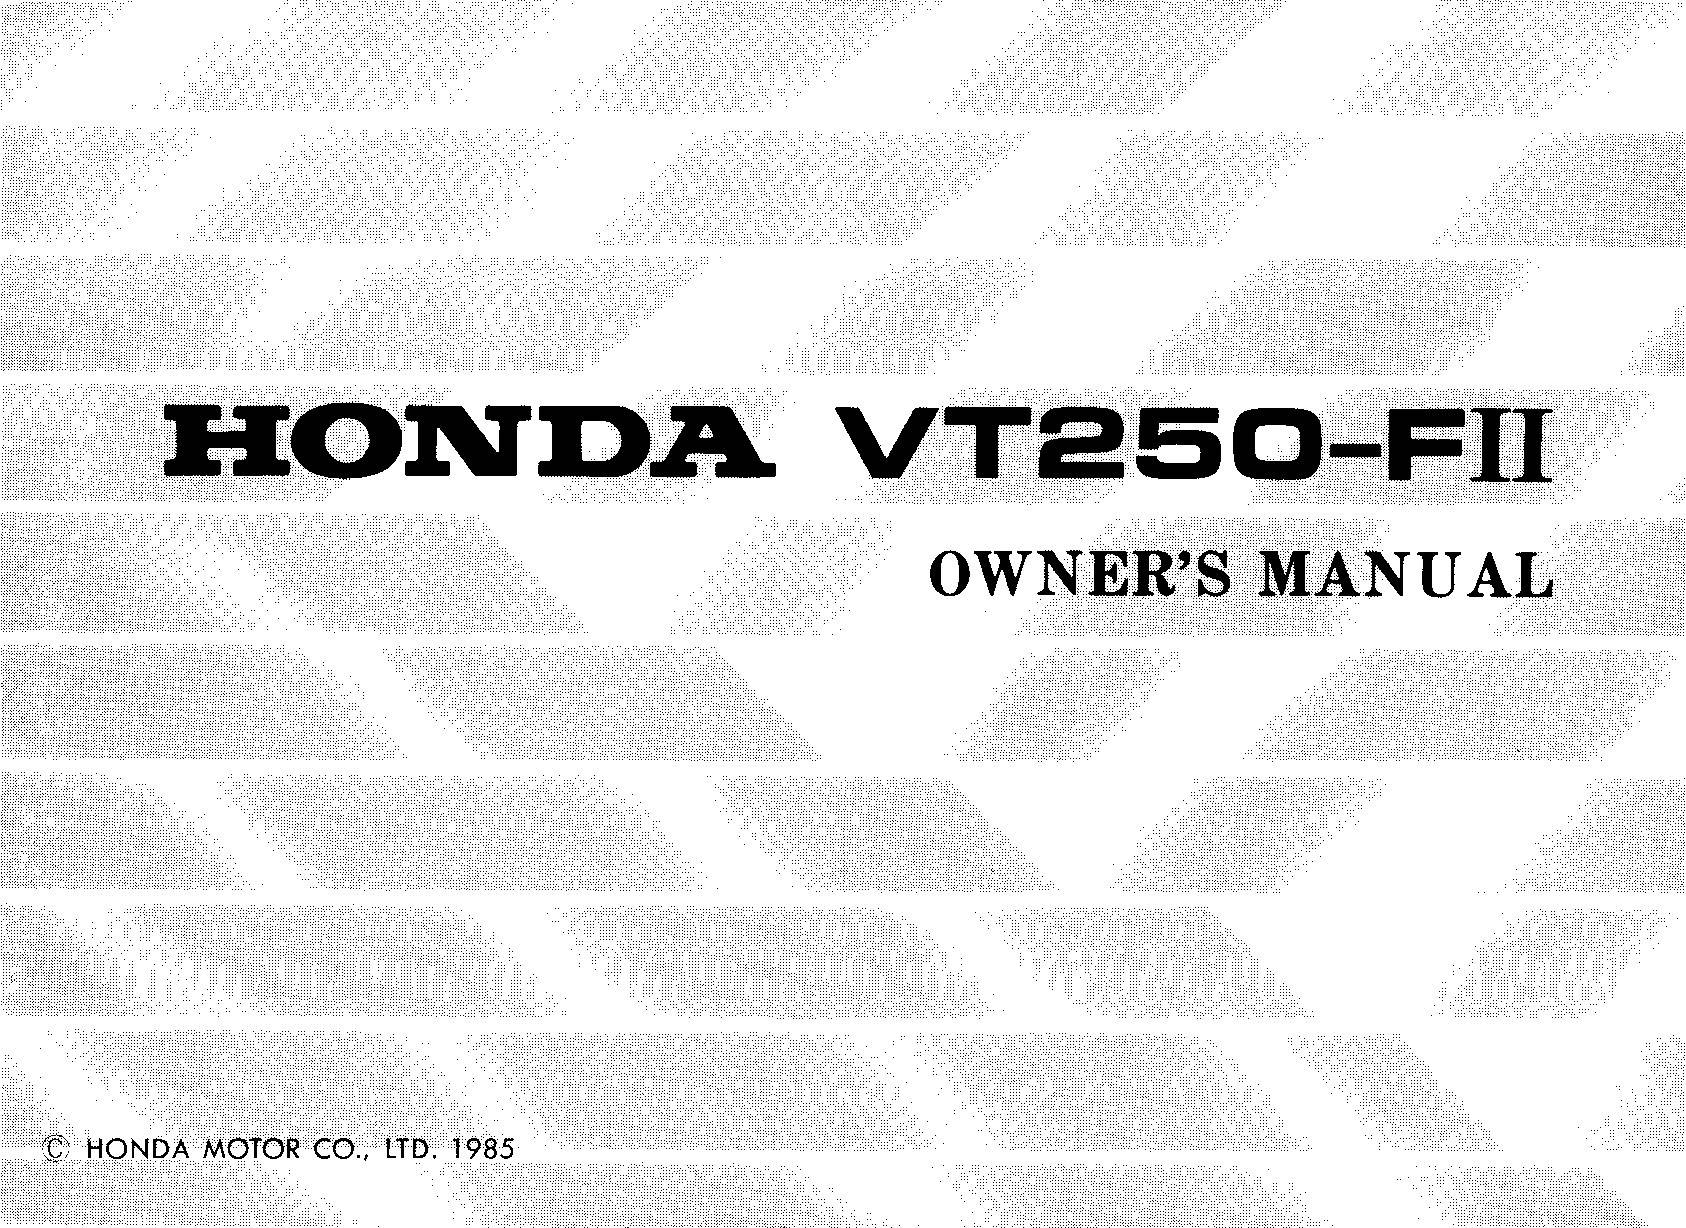 VT250 F2 cover.jpg